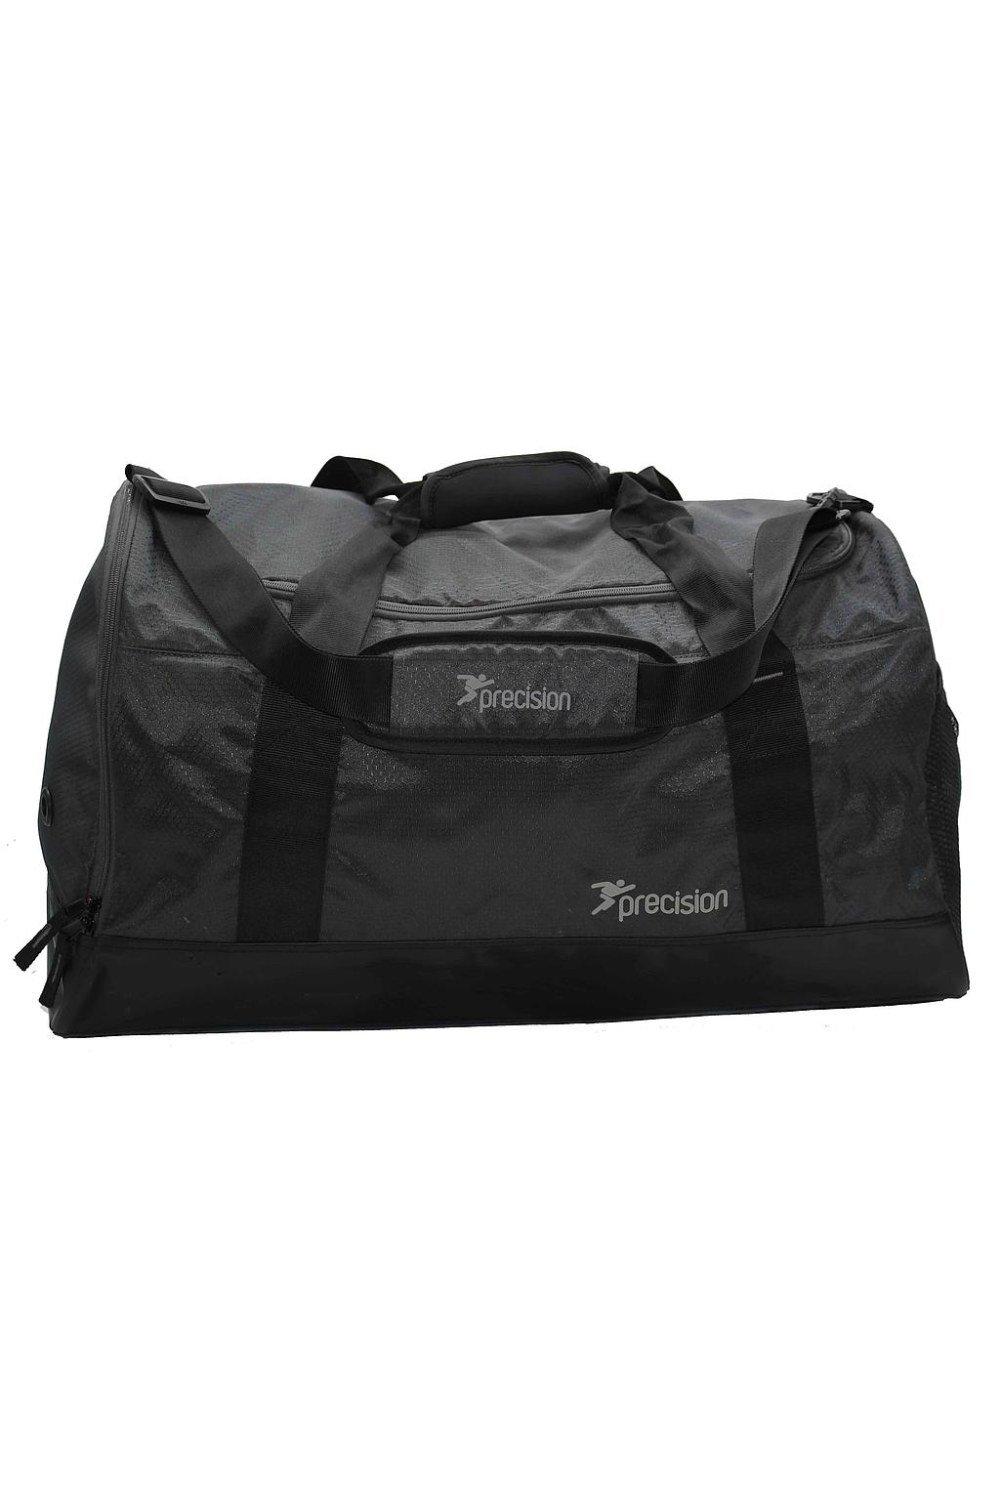 Дорожная сумка Pro Hx Team Precision, черный